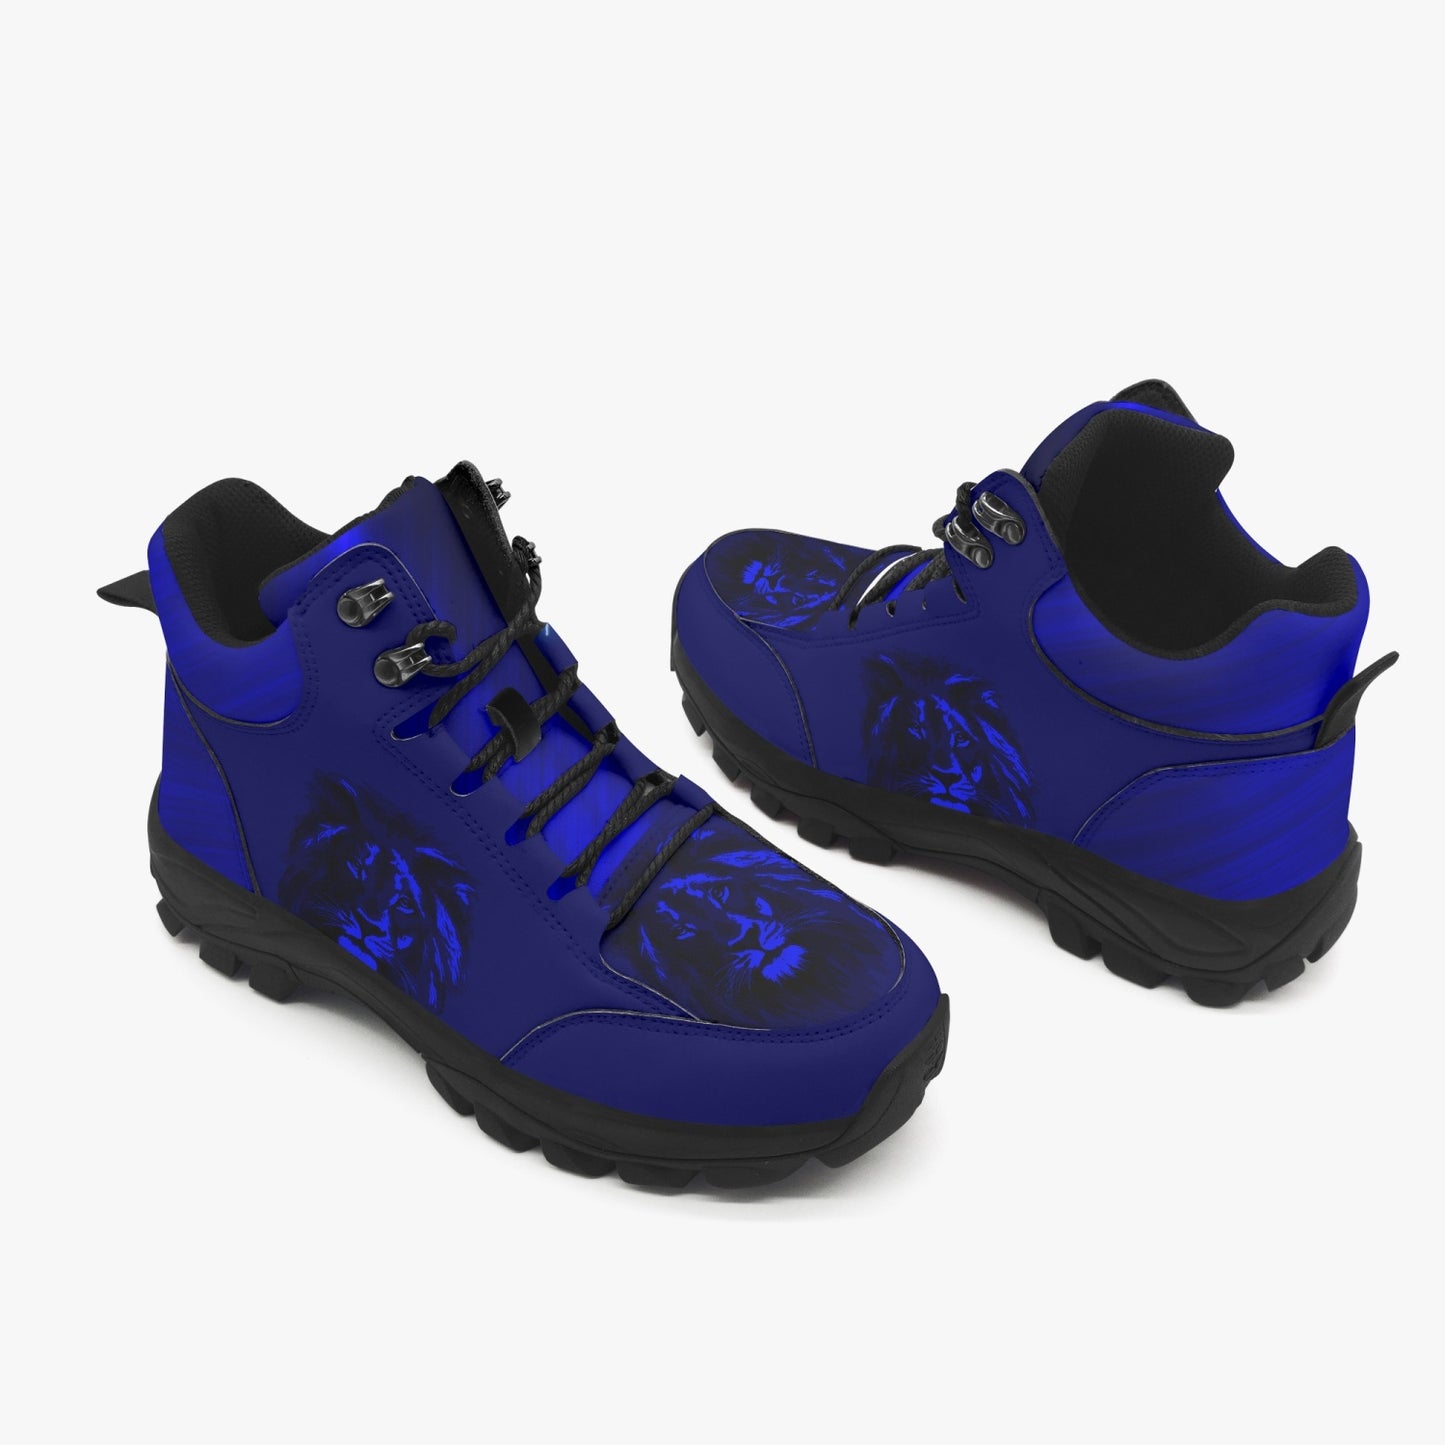 Blue Lion Boots